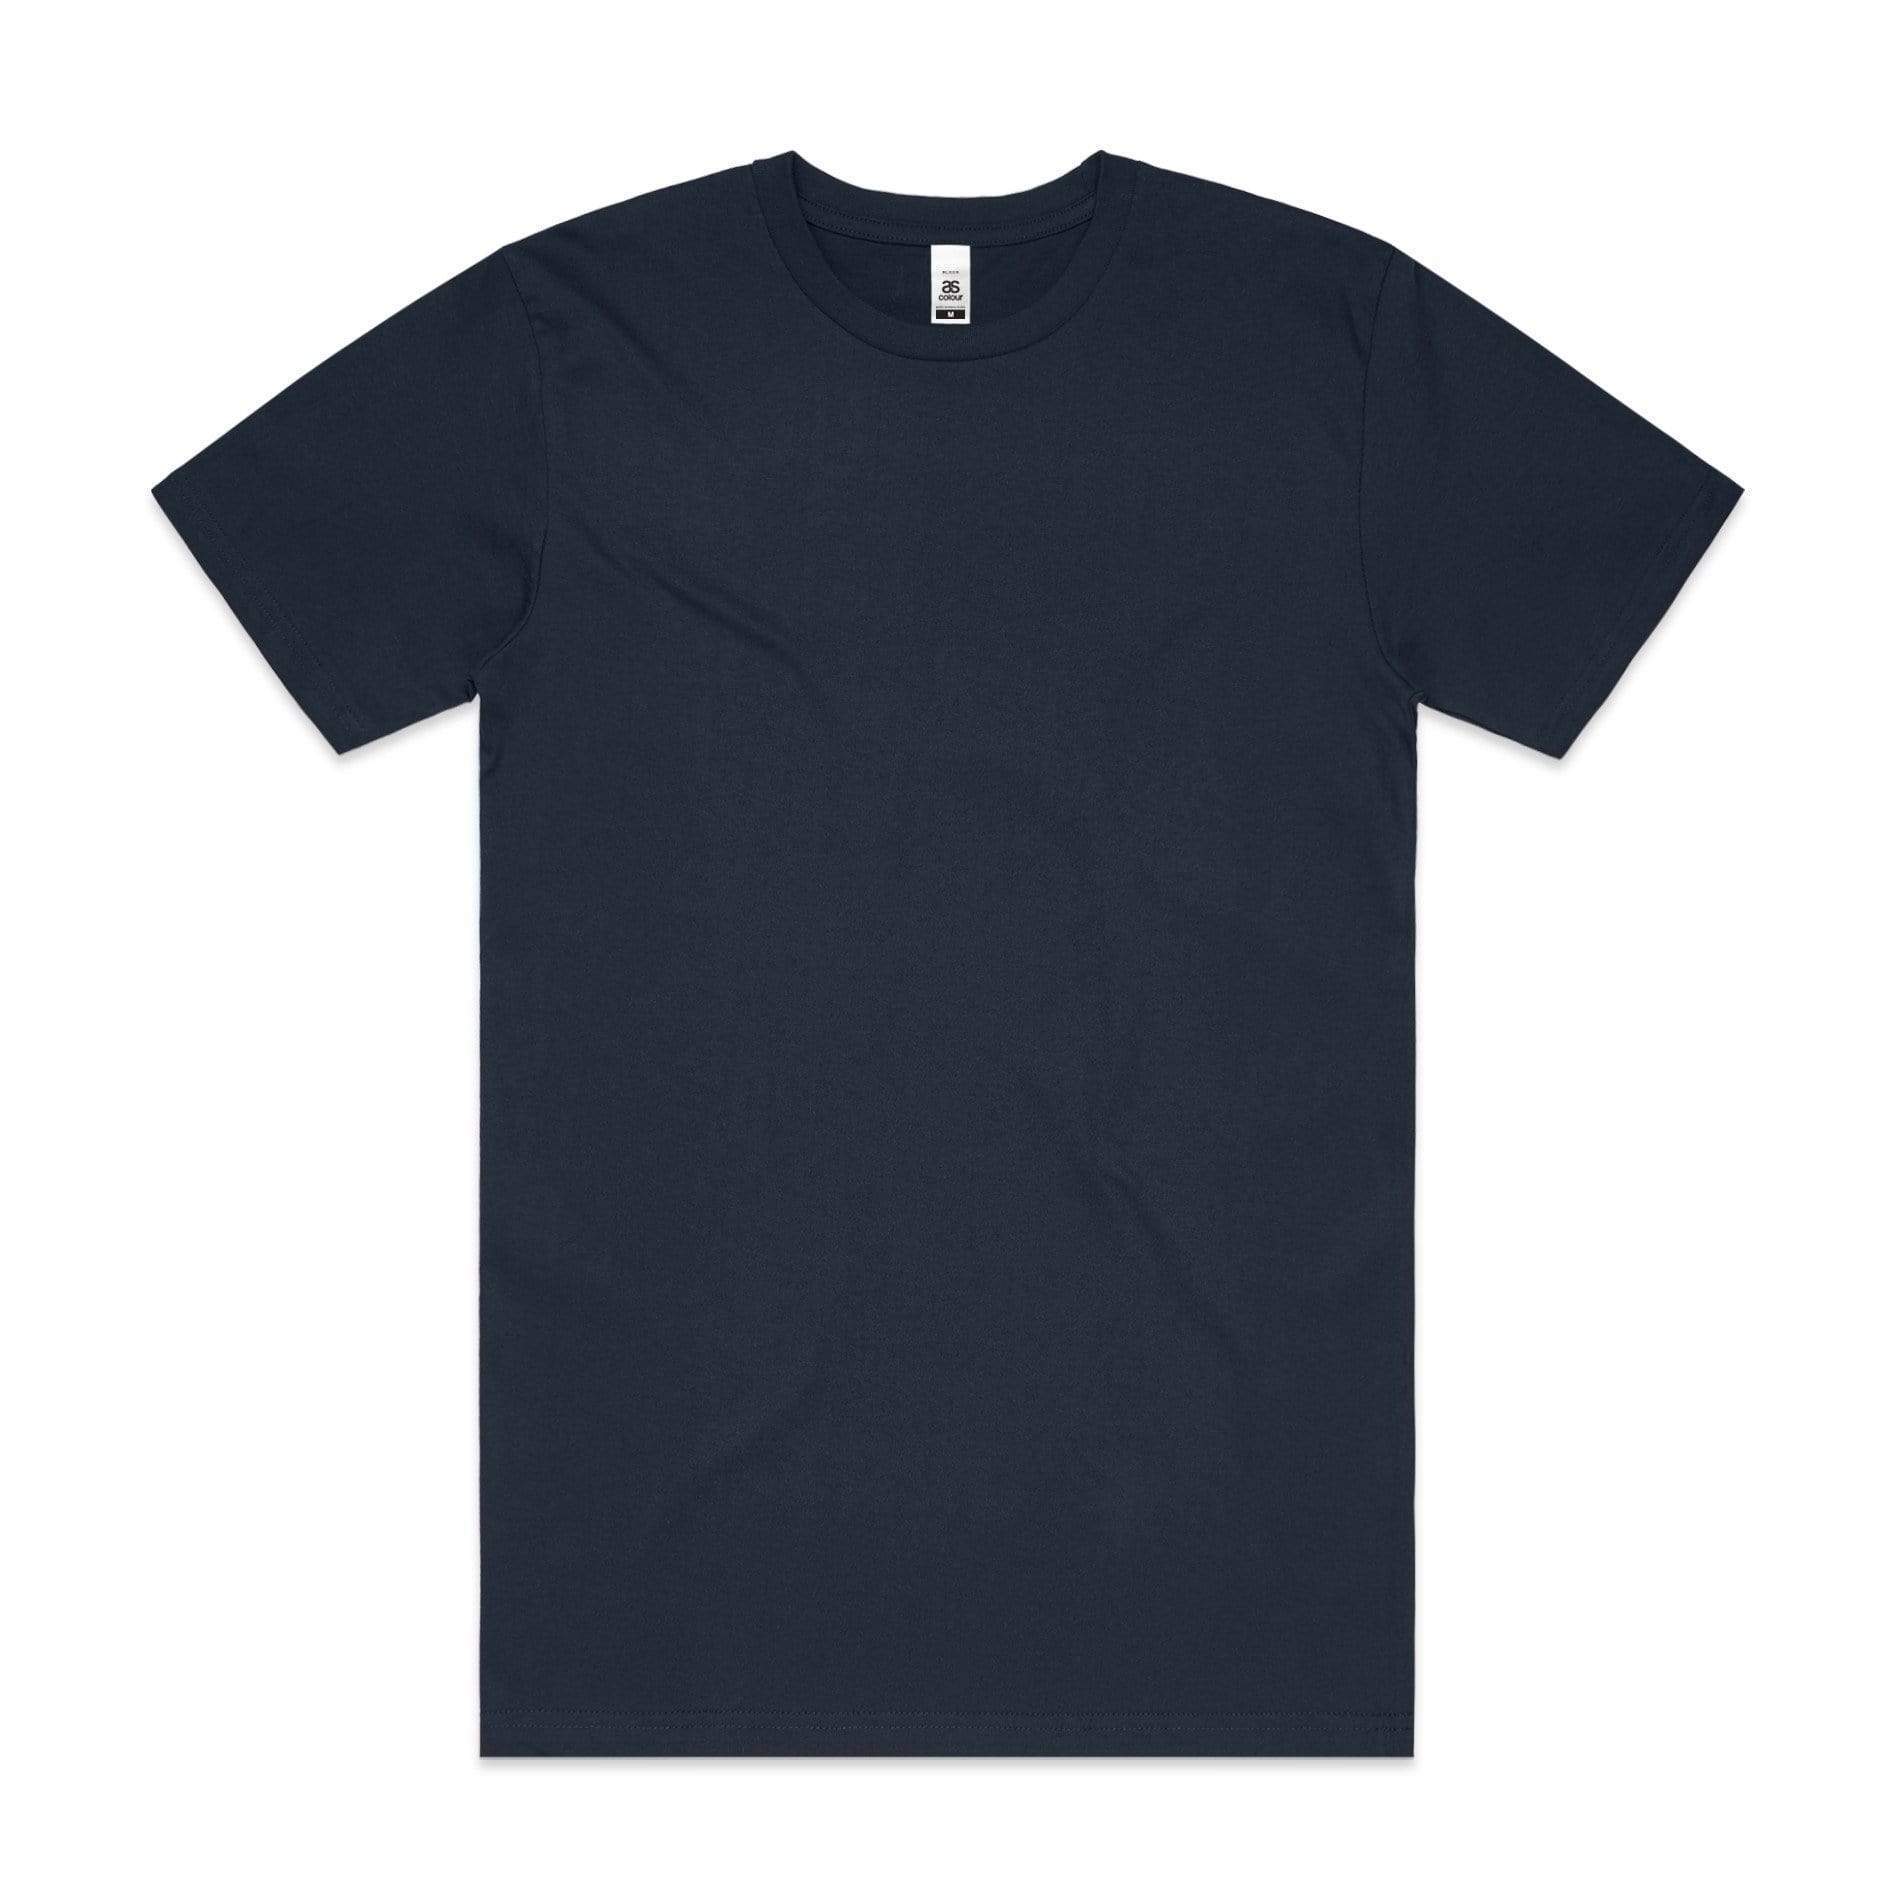 As Colour Men's block T shirt 5050 (No print no sale) - Flash Uniforms 